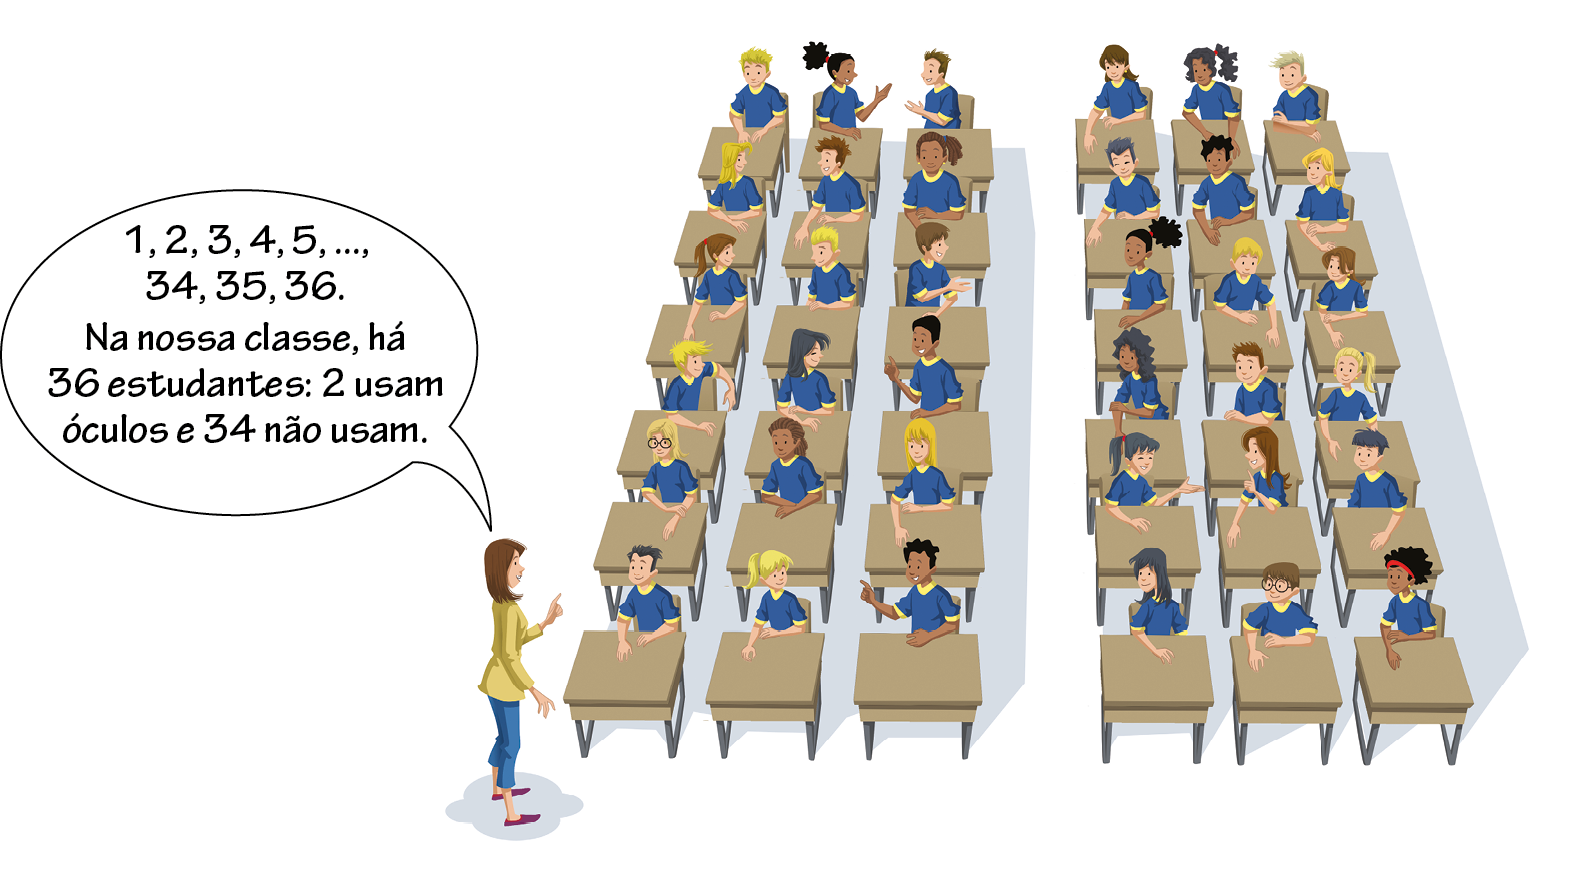 Ilustração. Vista frontal de uma sala de aula com as carteiras dispostas em 6 fileiras com 6 carteiras cada uma. Há dois grupos de 3 fileiras separadas por um corredor. Em cada carteira, um estudante está sentado, vestindo uniforme azul da escola. À frente da sala está uma professora de blusa amarela, calça azul e sapatos cor de vinho, dizendo: 1, 2, 3, 4, 5, reticências, 34, 35, 36. Na nossa classe, há 36 estudantes: 2 usam óculos e 34 não usam.